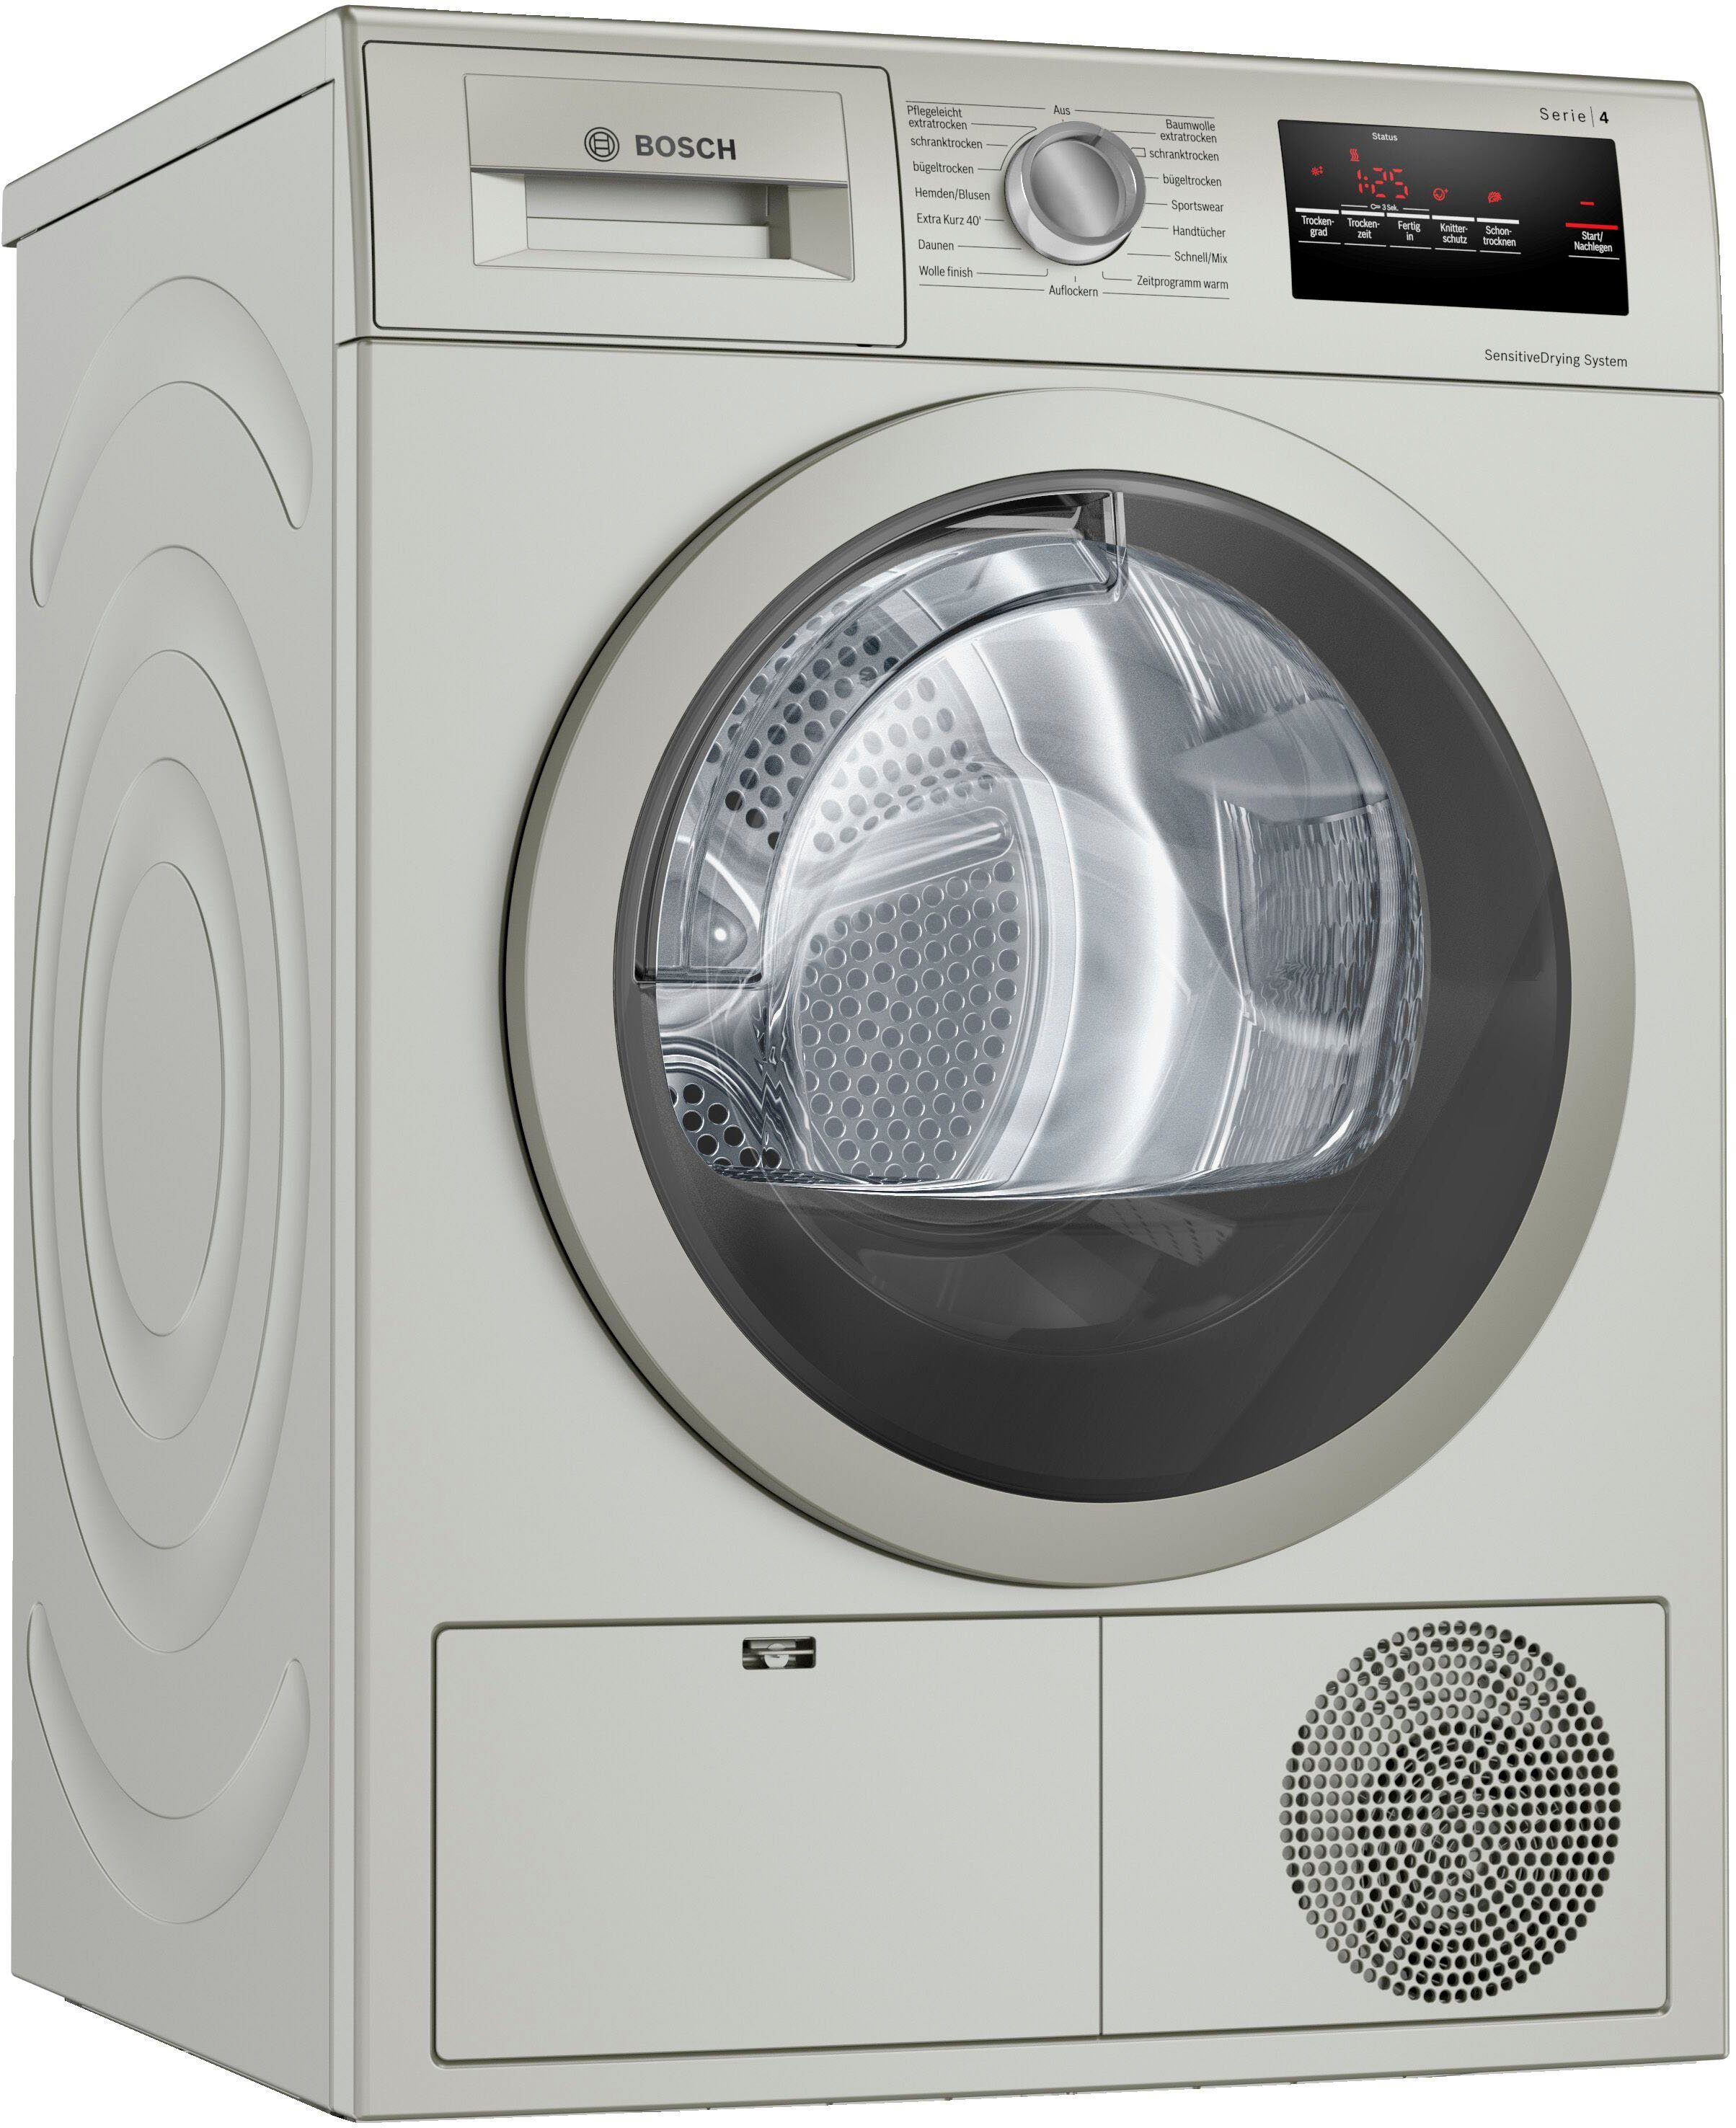 AutoDry EasyClean 7 kg 1400 UpM Bosch WAN28K40 Serie 4 Waschmaschine Endezeitvorwahl Weiß & WTH83V00 Serie 4 Wärmepumpen-Trockner 8 kg Sensitive Drying System textilschonende Trommelstruktur 